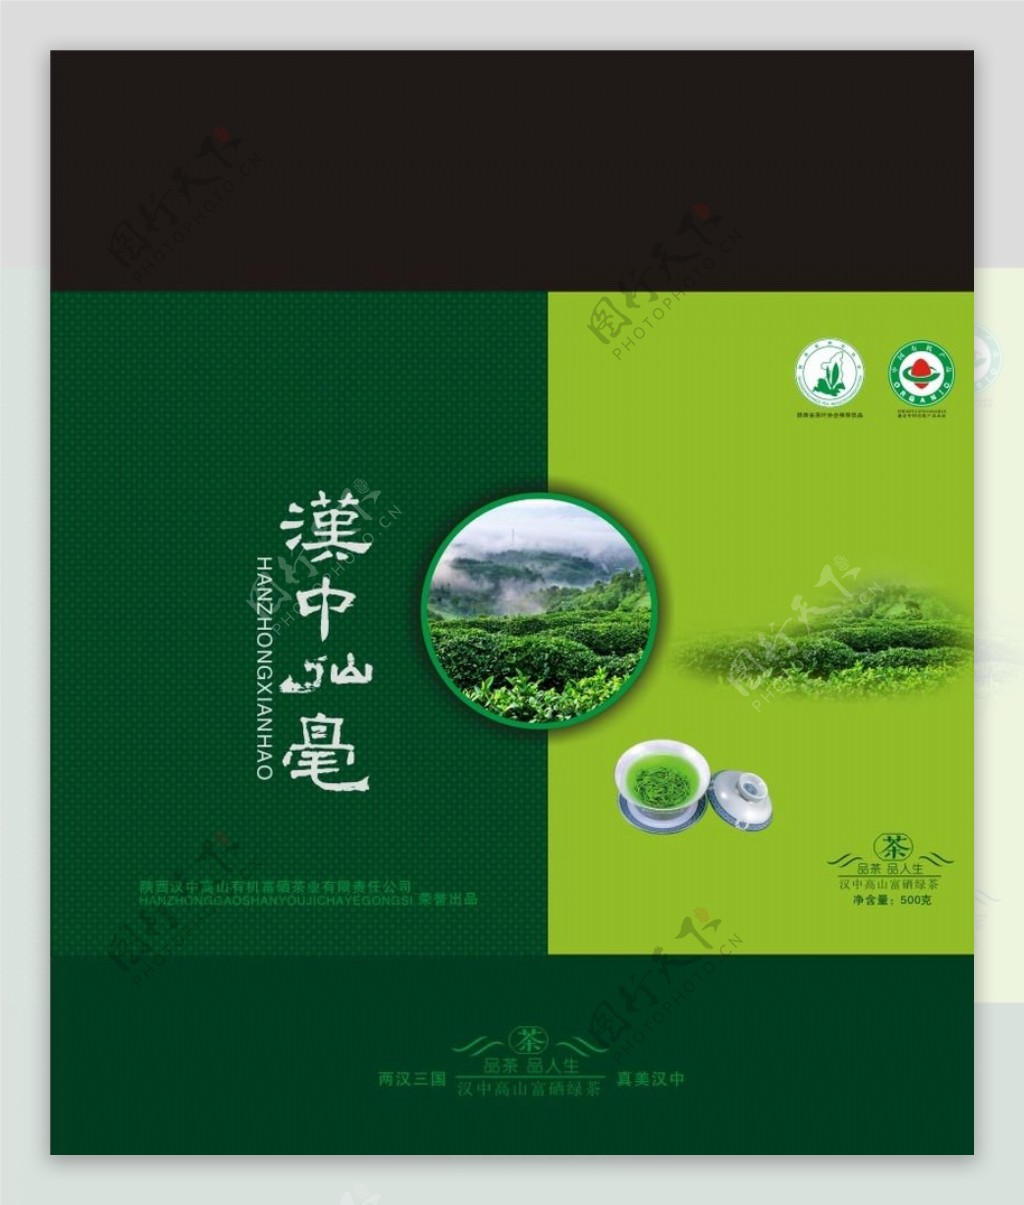 绿茶叶文化茶元素包装